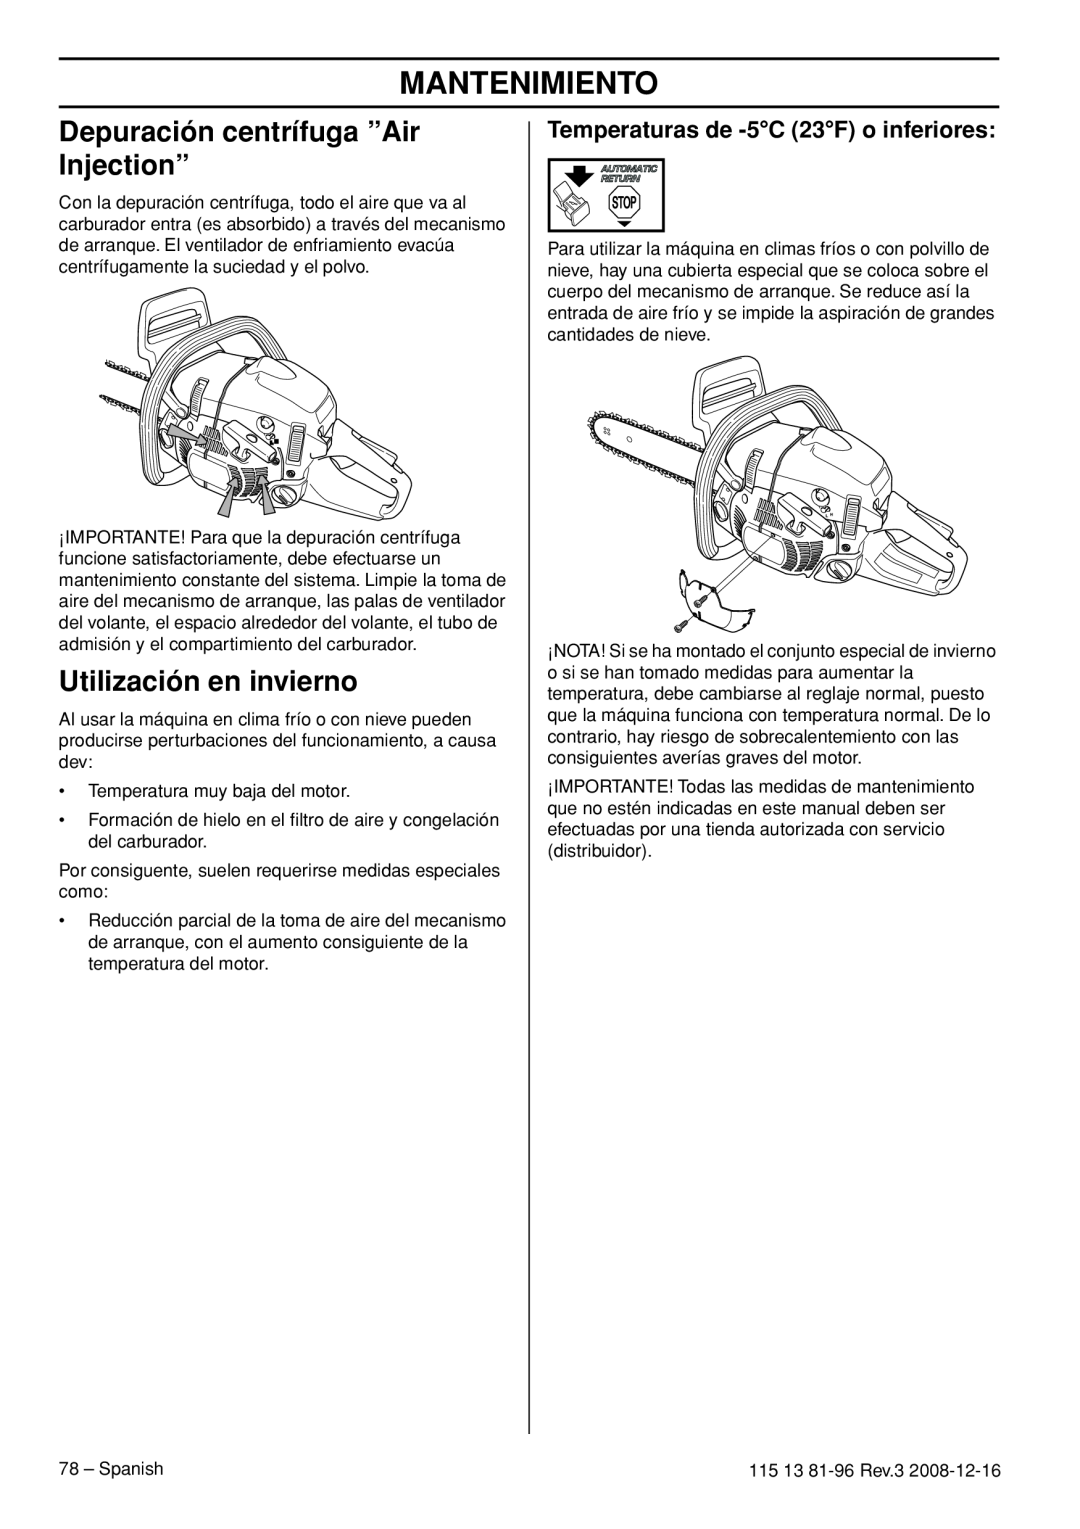 Husqvarna 450e EPA III, 445e EPA III manual Depuración centrífuga ”Air Injection”, Utilización en invierno, Mantenimiento 